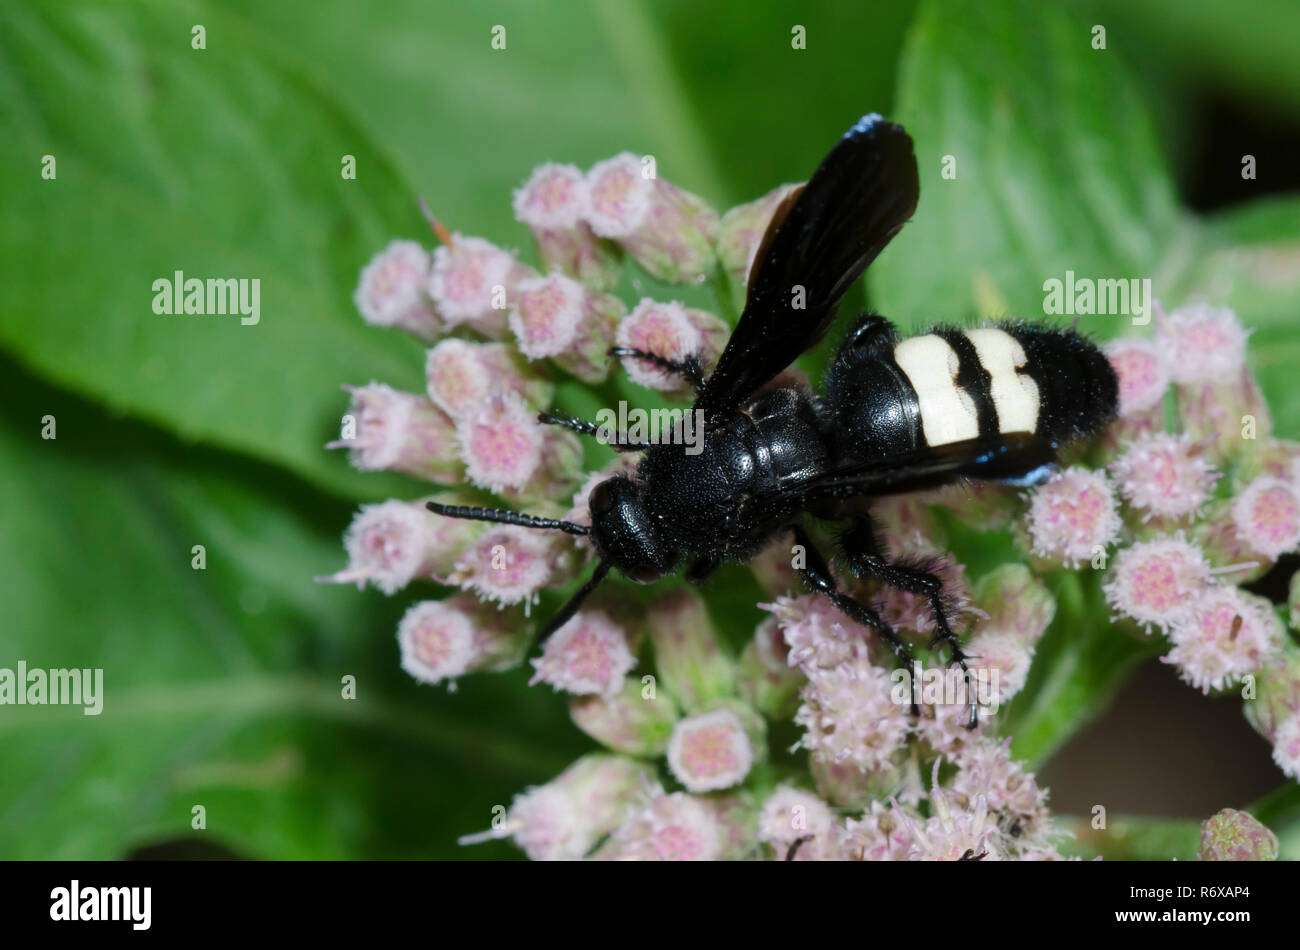 Scolia bicincta (Scolia bicincta) - Picture Insect